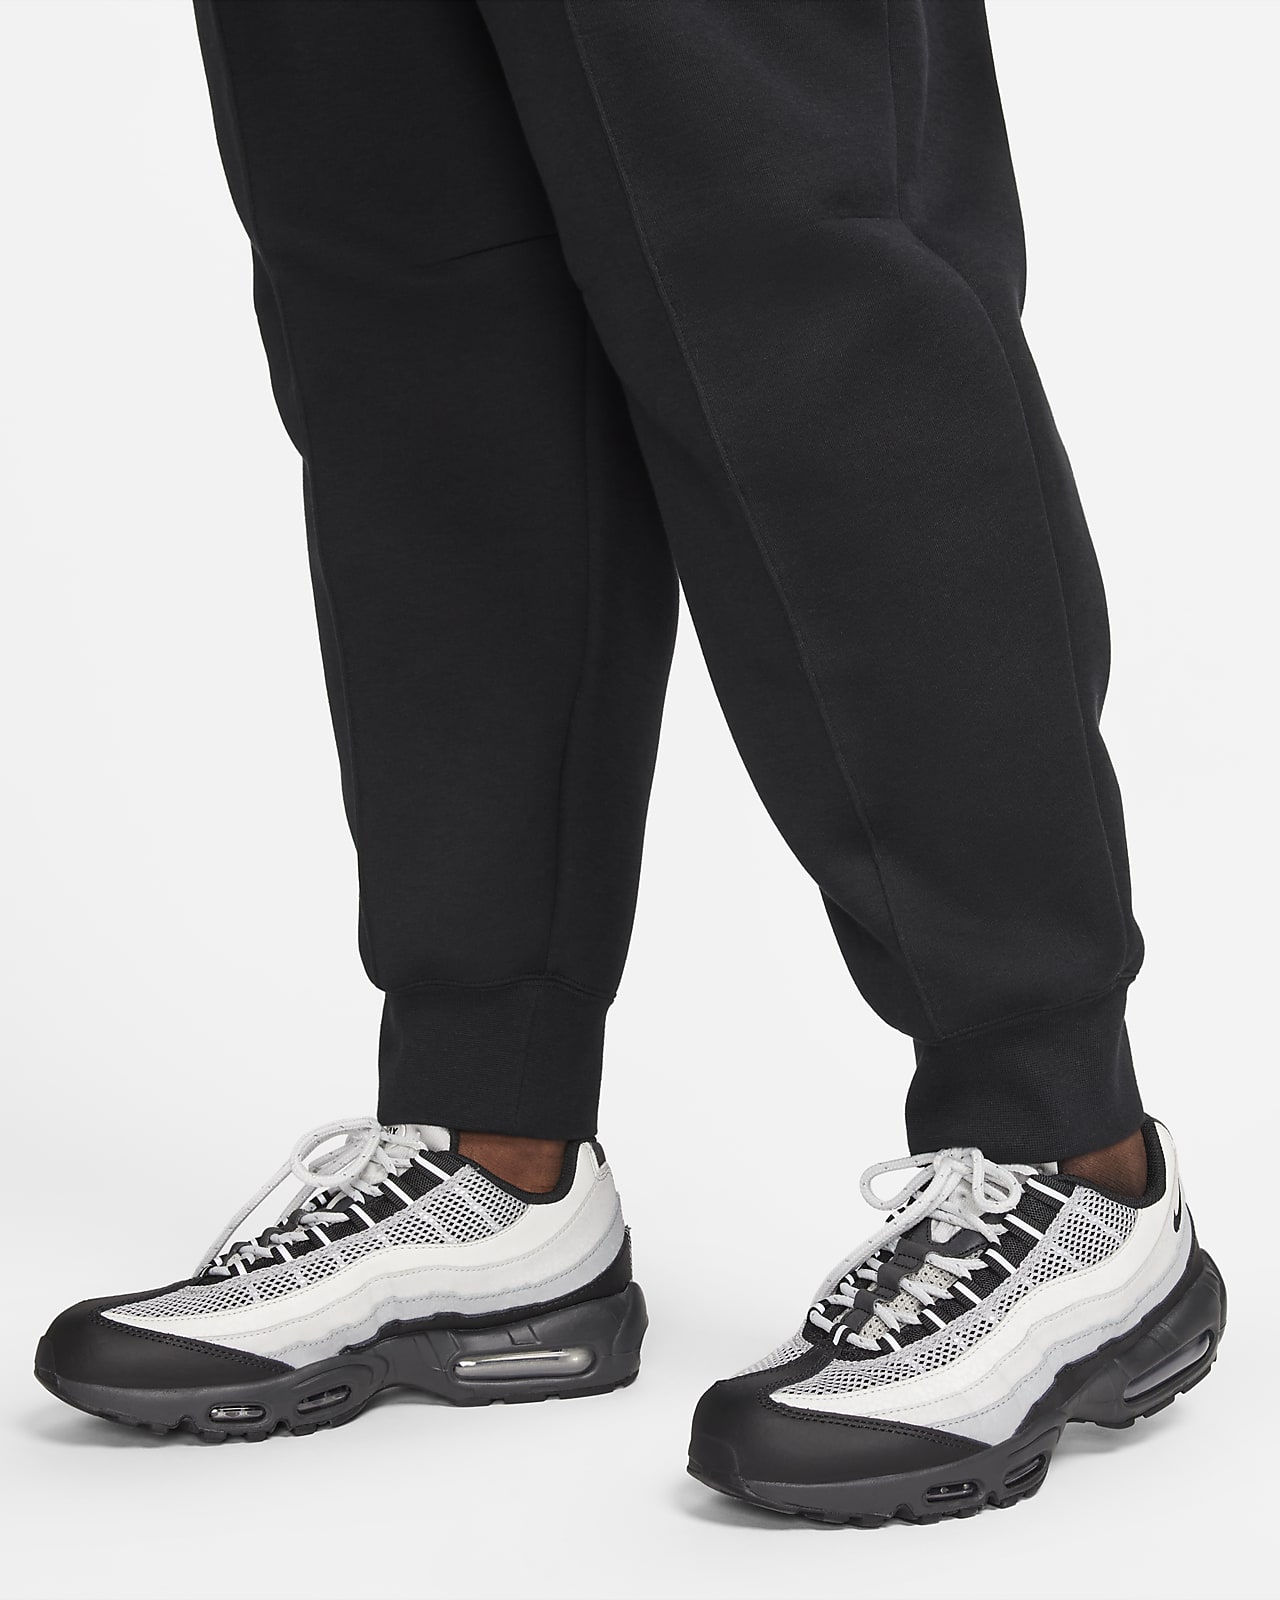 Nike Women's Sportswear Tech Fleece Jogger Pants FB8330-110 Stardust SZ  XS-3XL